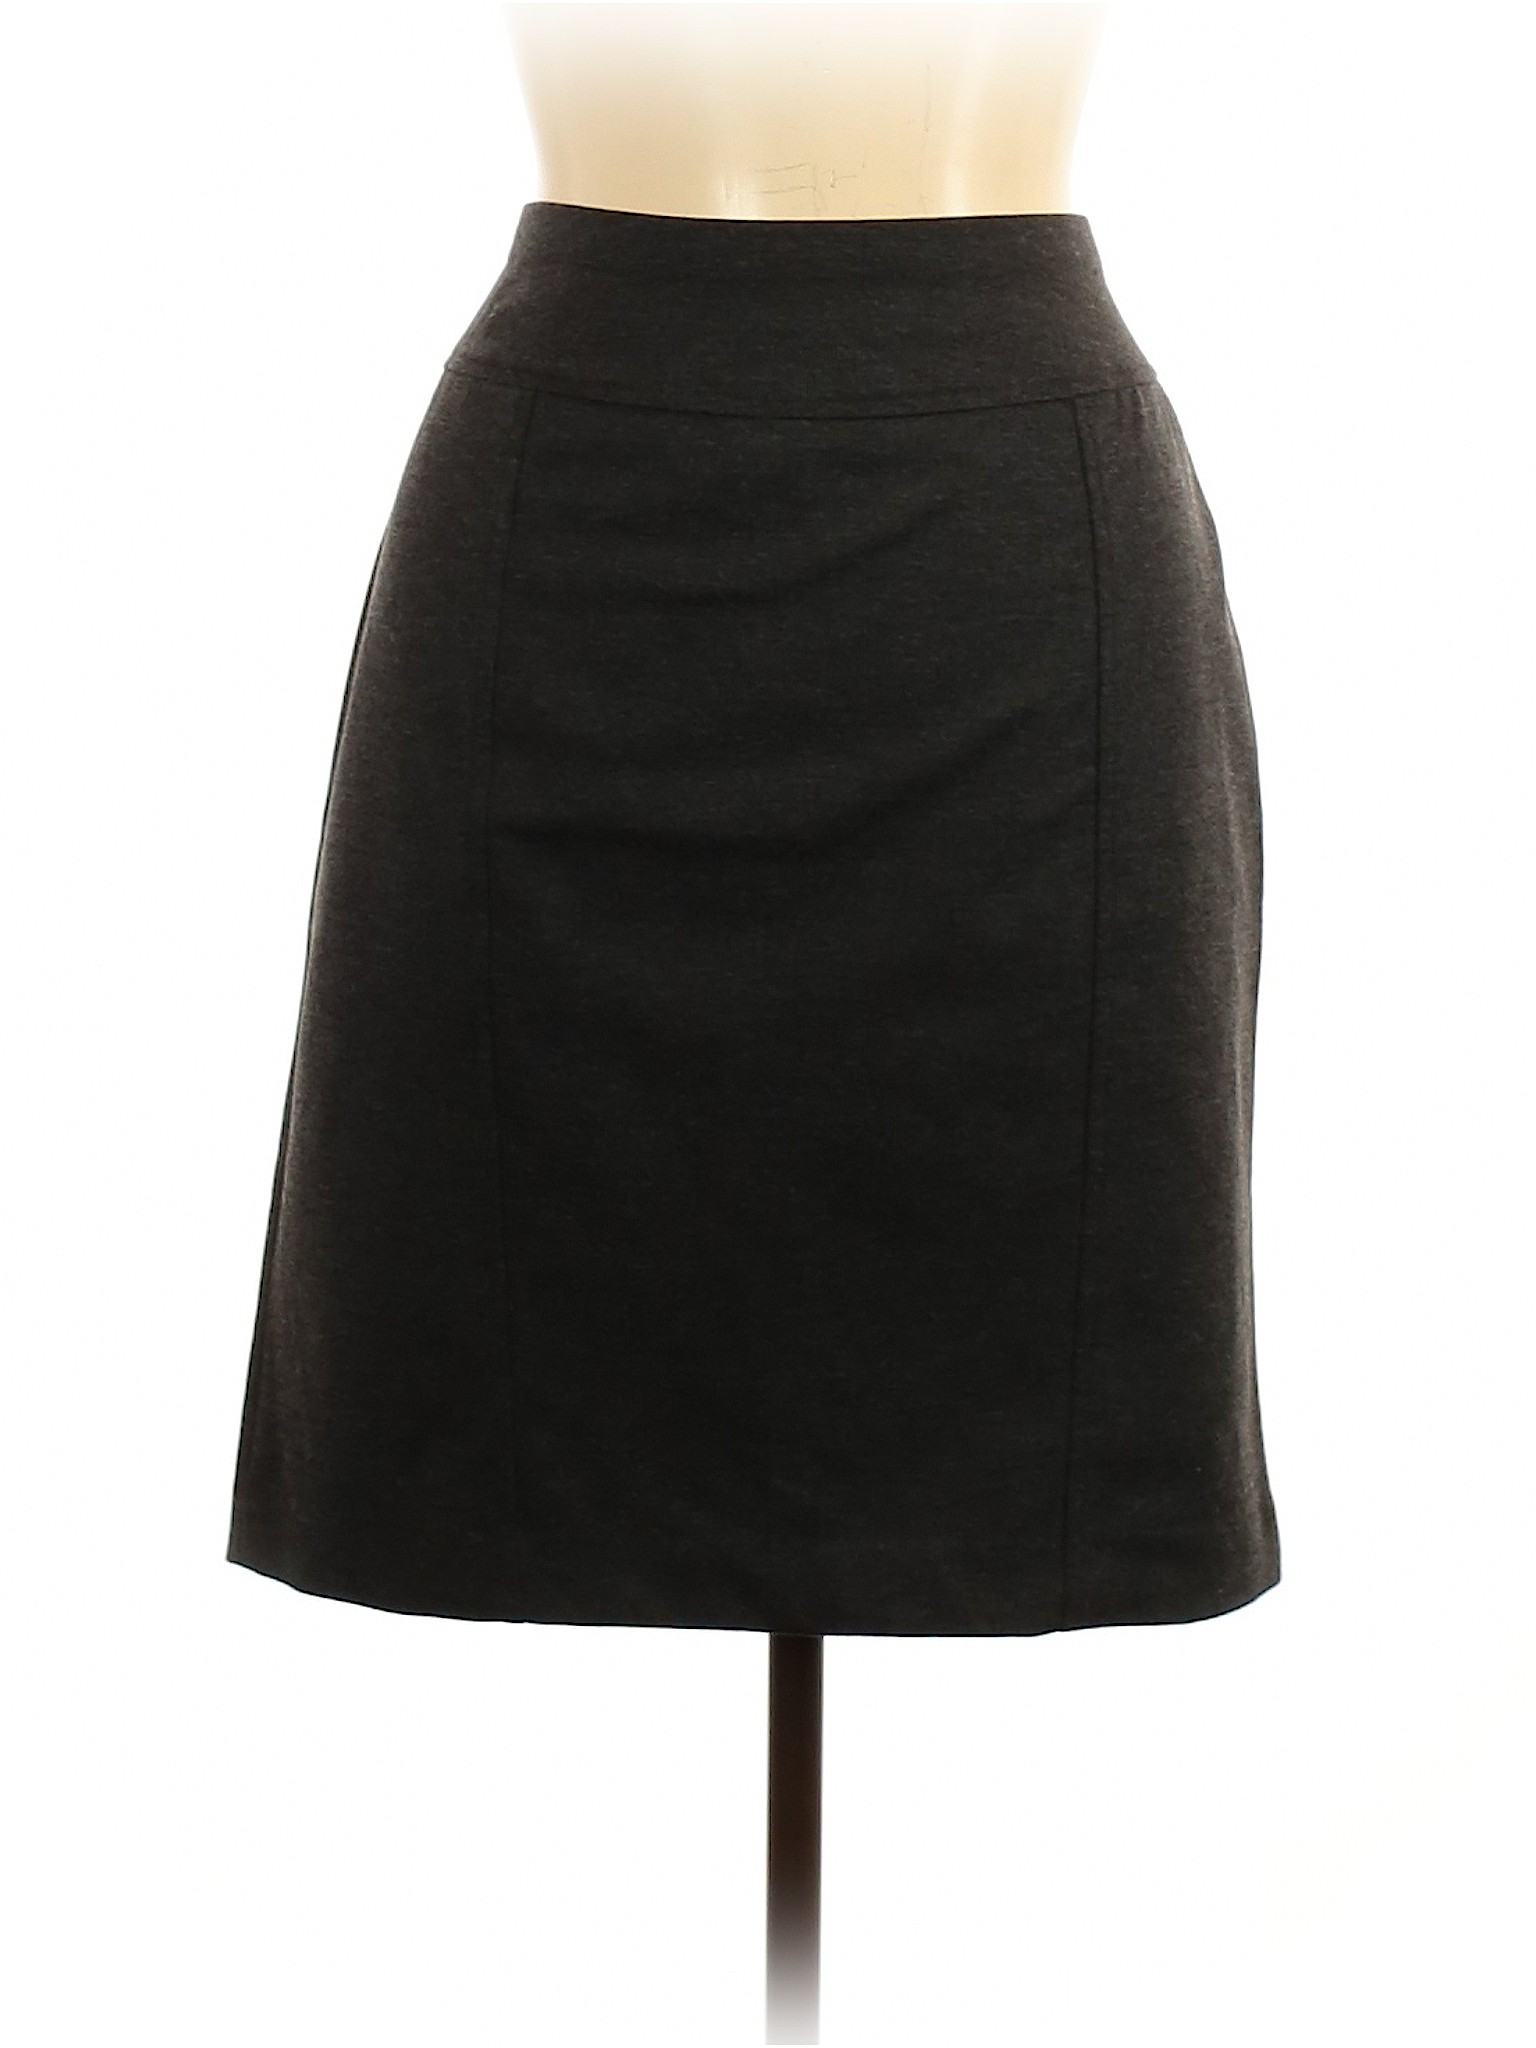 Ellen Tracy Women Black Casual Skirt L | eBay